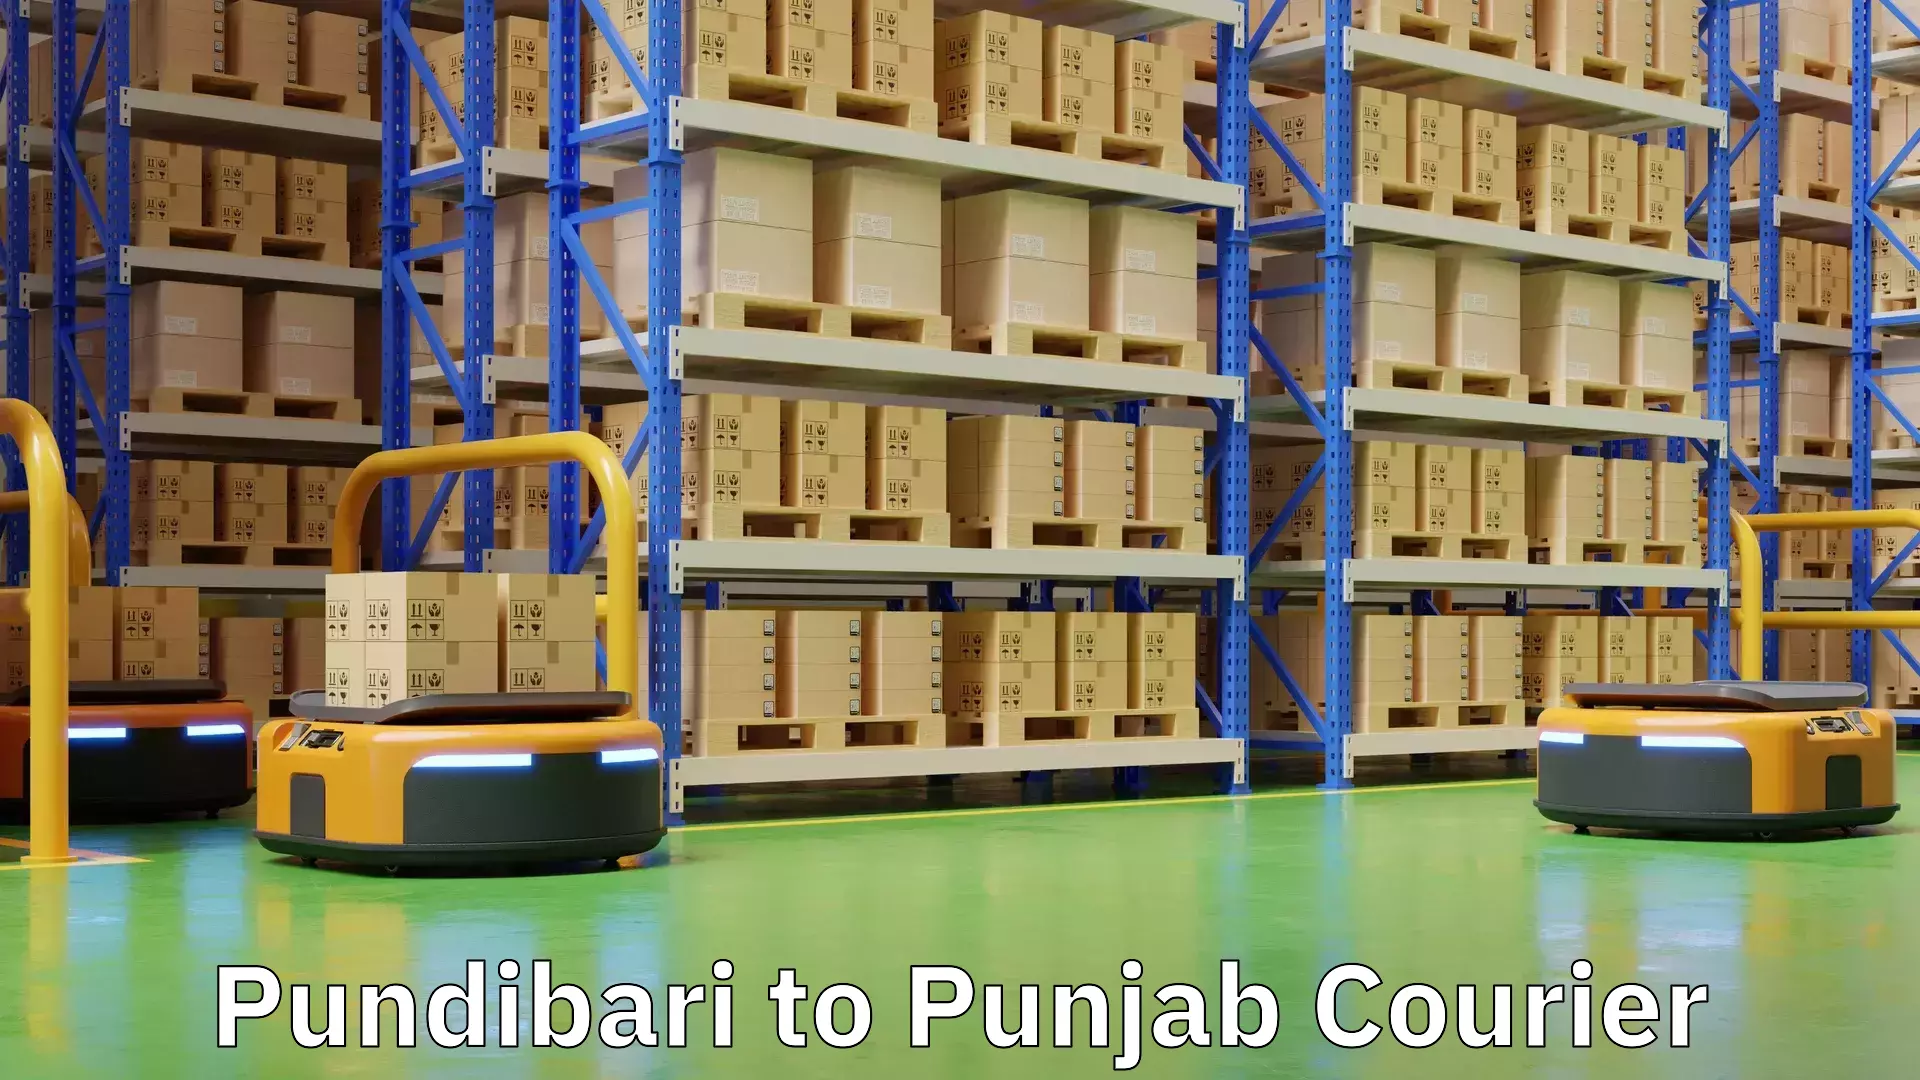 Same-day delivery solutions Pundibari to Punjab